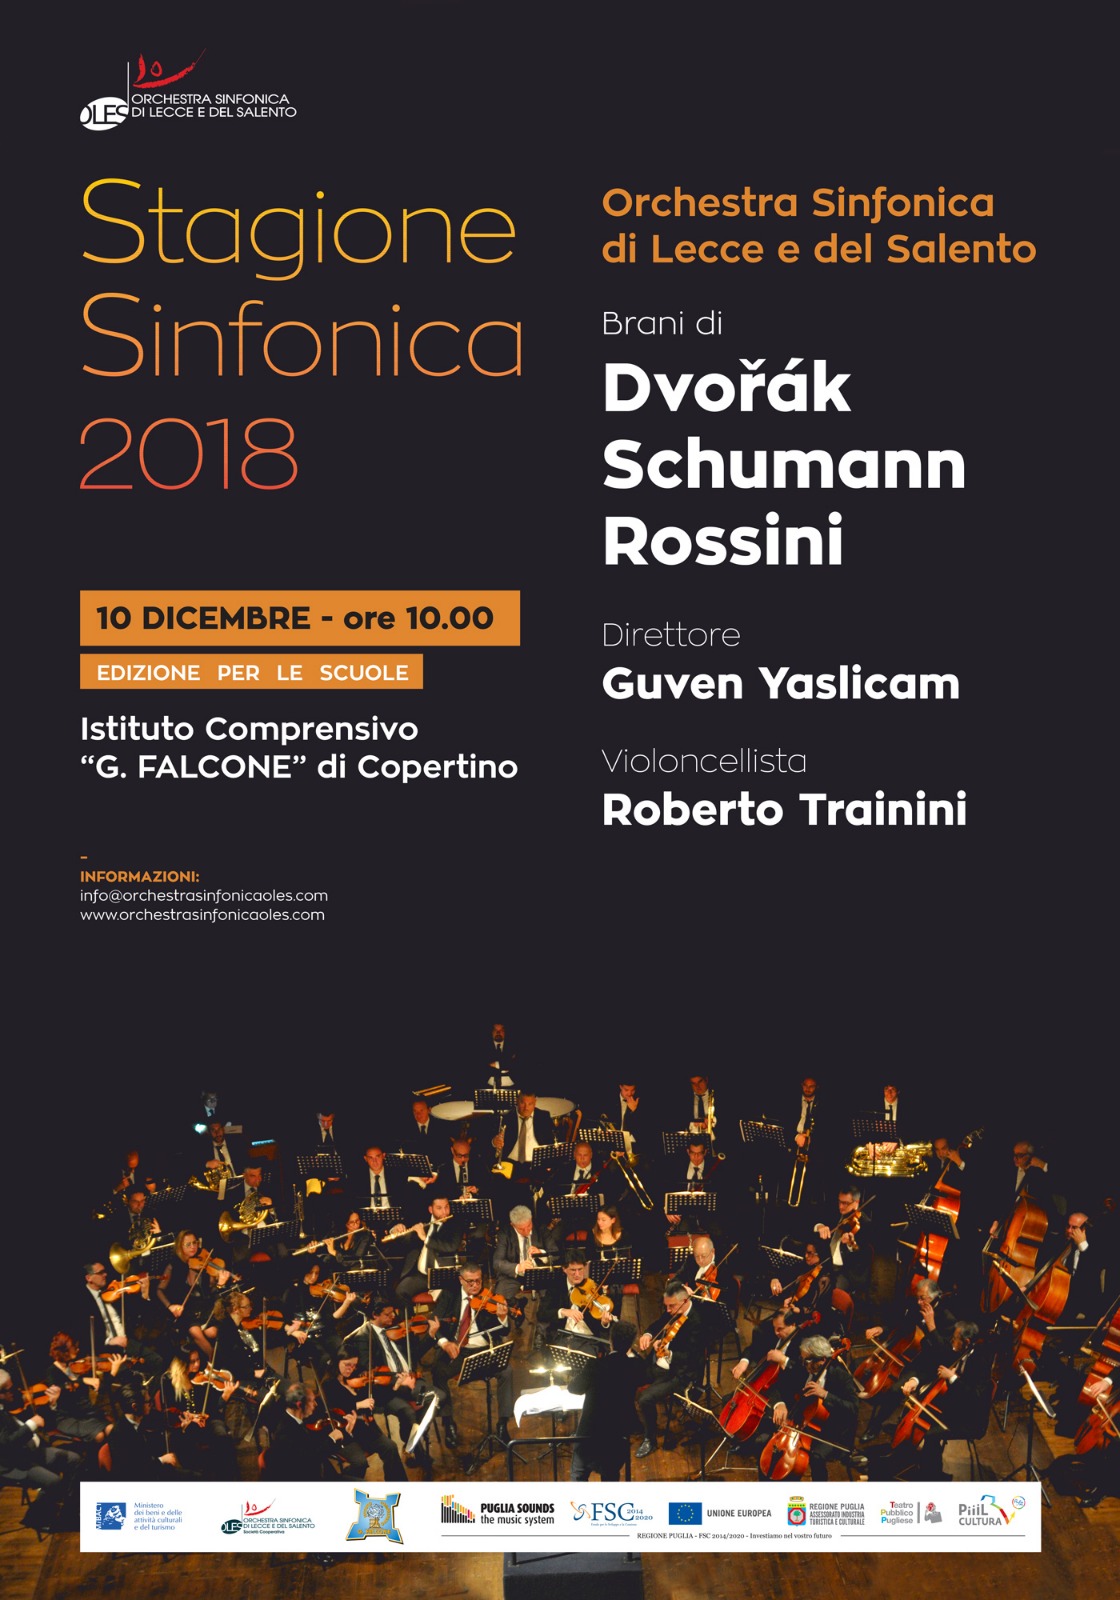 Stagione Sinfonica 2018 – Edizione per le Scuole